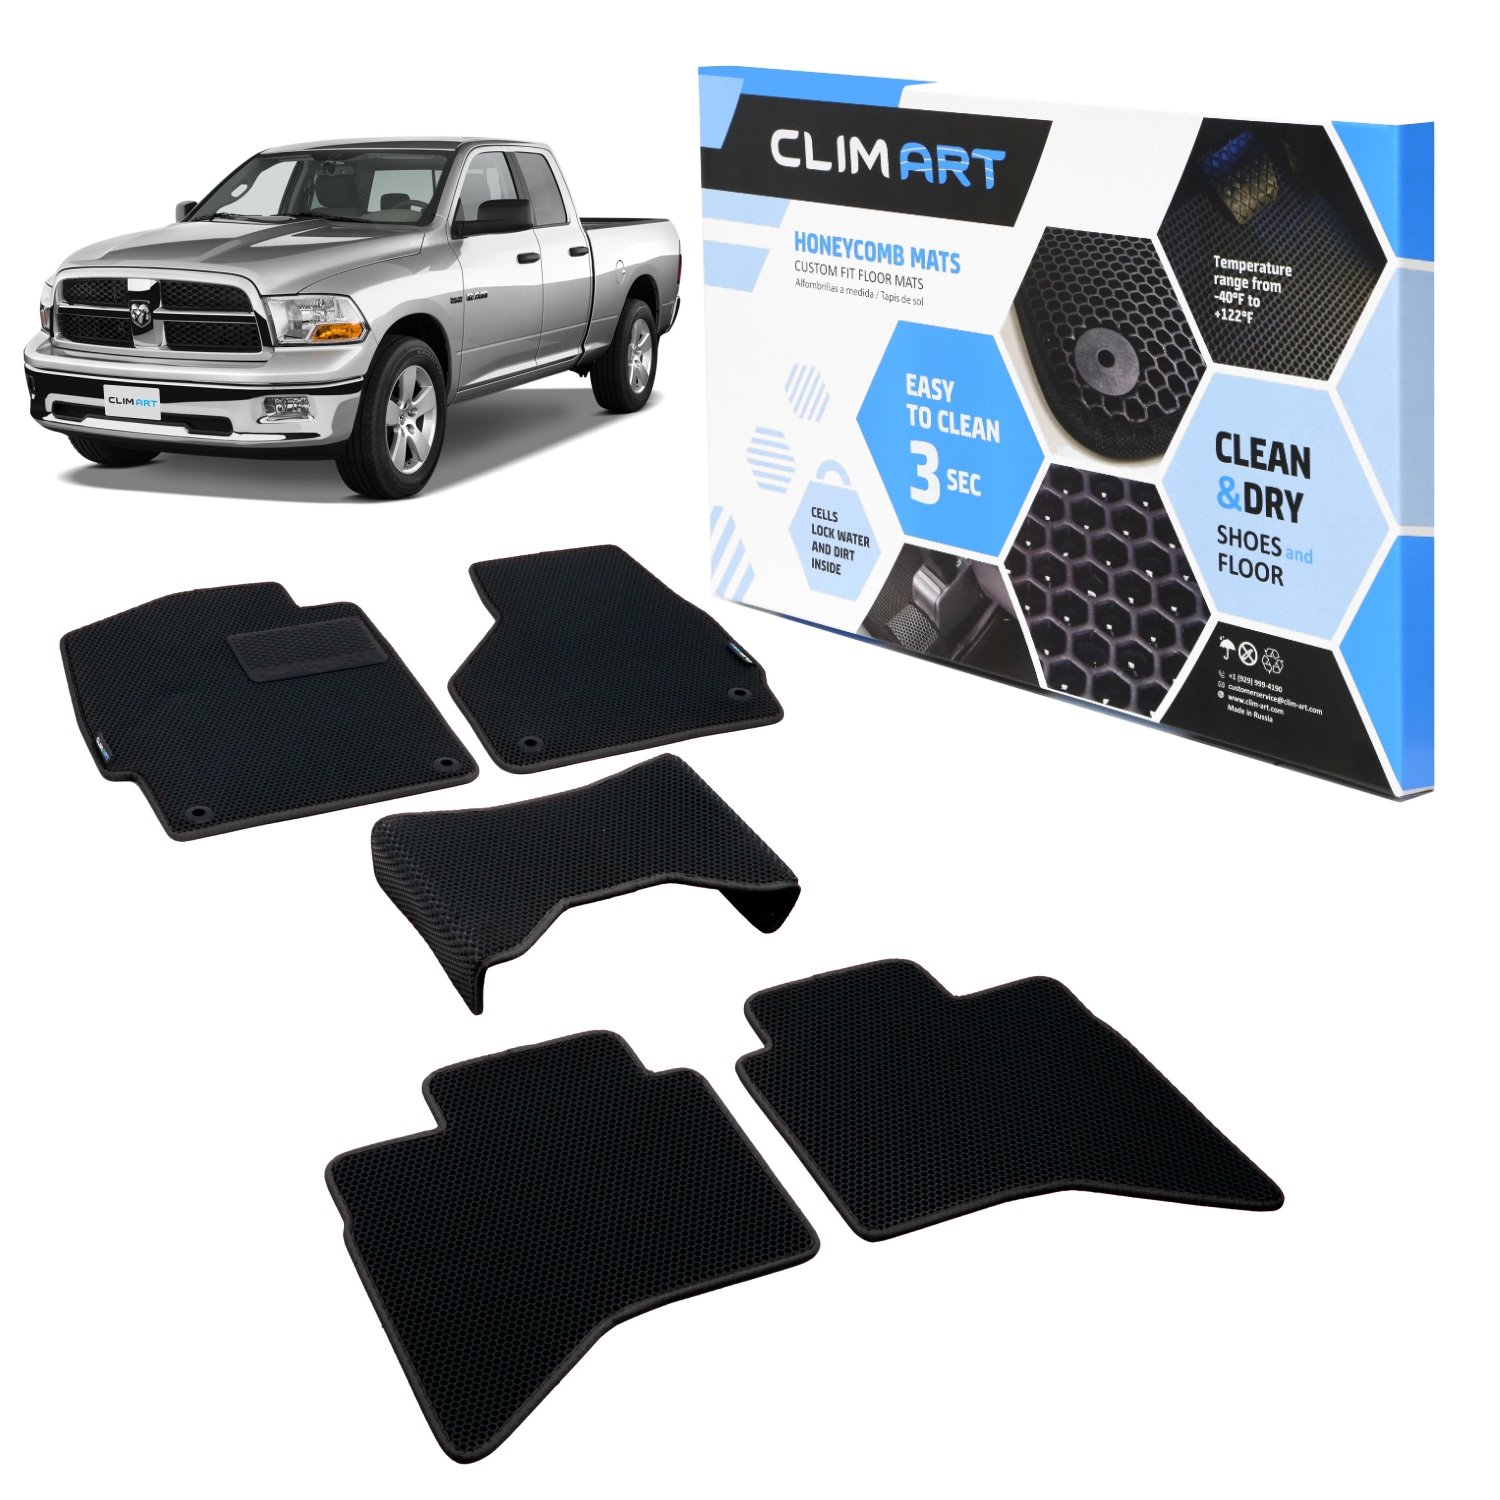 CLIM ART Honeycomb Custom Fit Floor Mats for 2009-2018 Dodge RAM 1500 Quad Cab